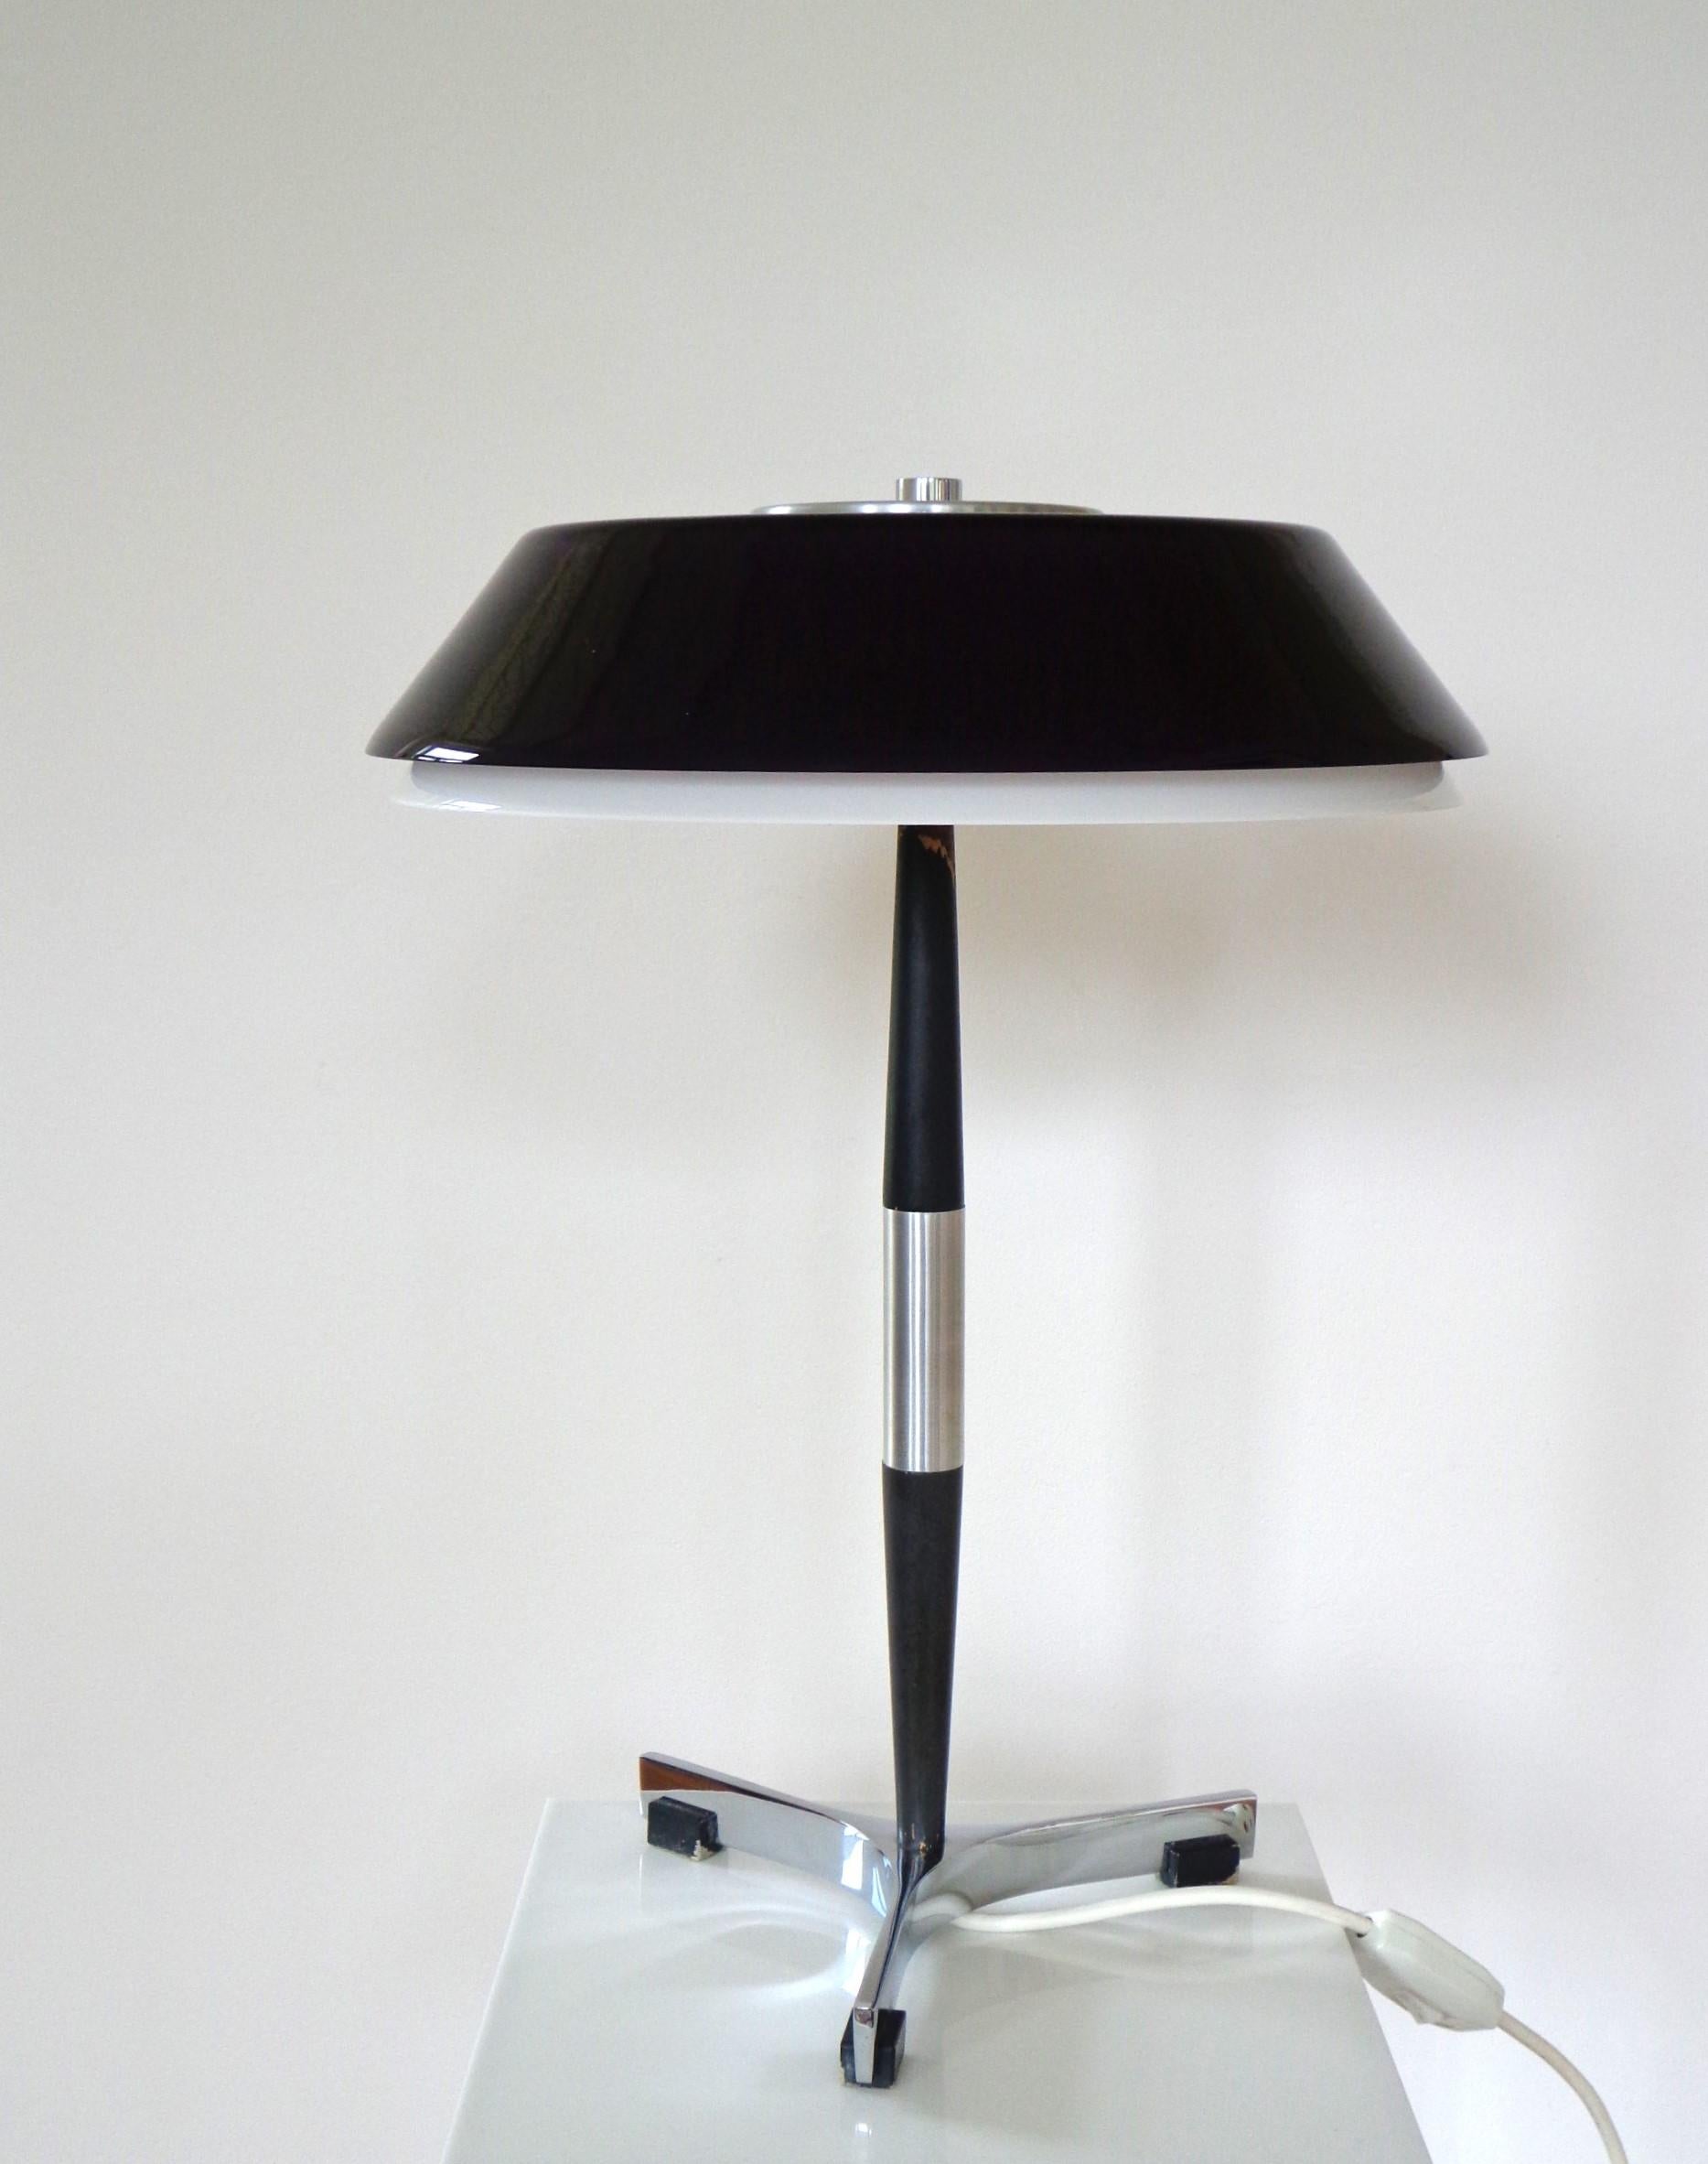 Scandinavian Modern Jo Hammerborg Table Lamp Model Senior Produced by Fog & Mørup in Denmark For Sale